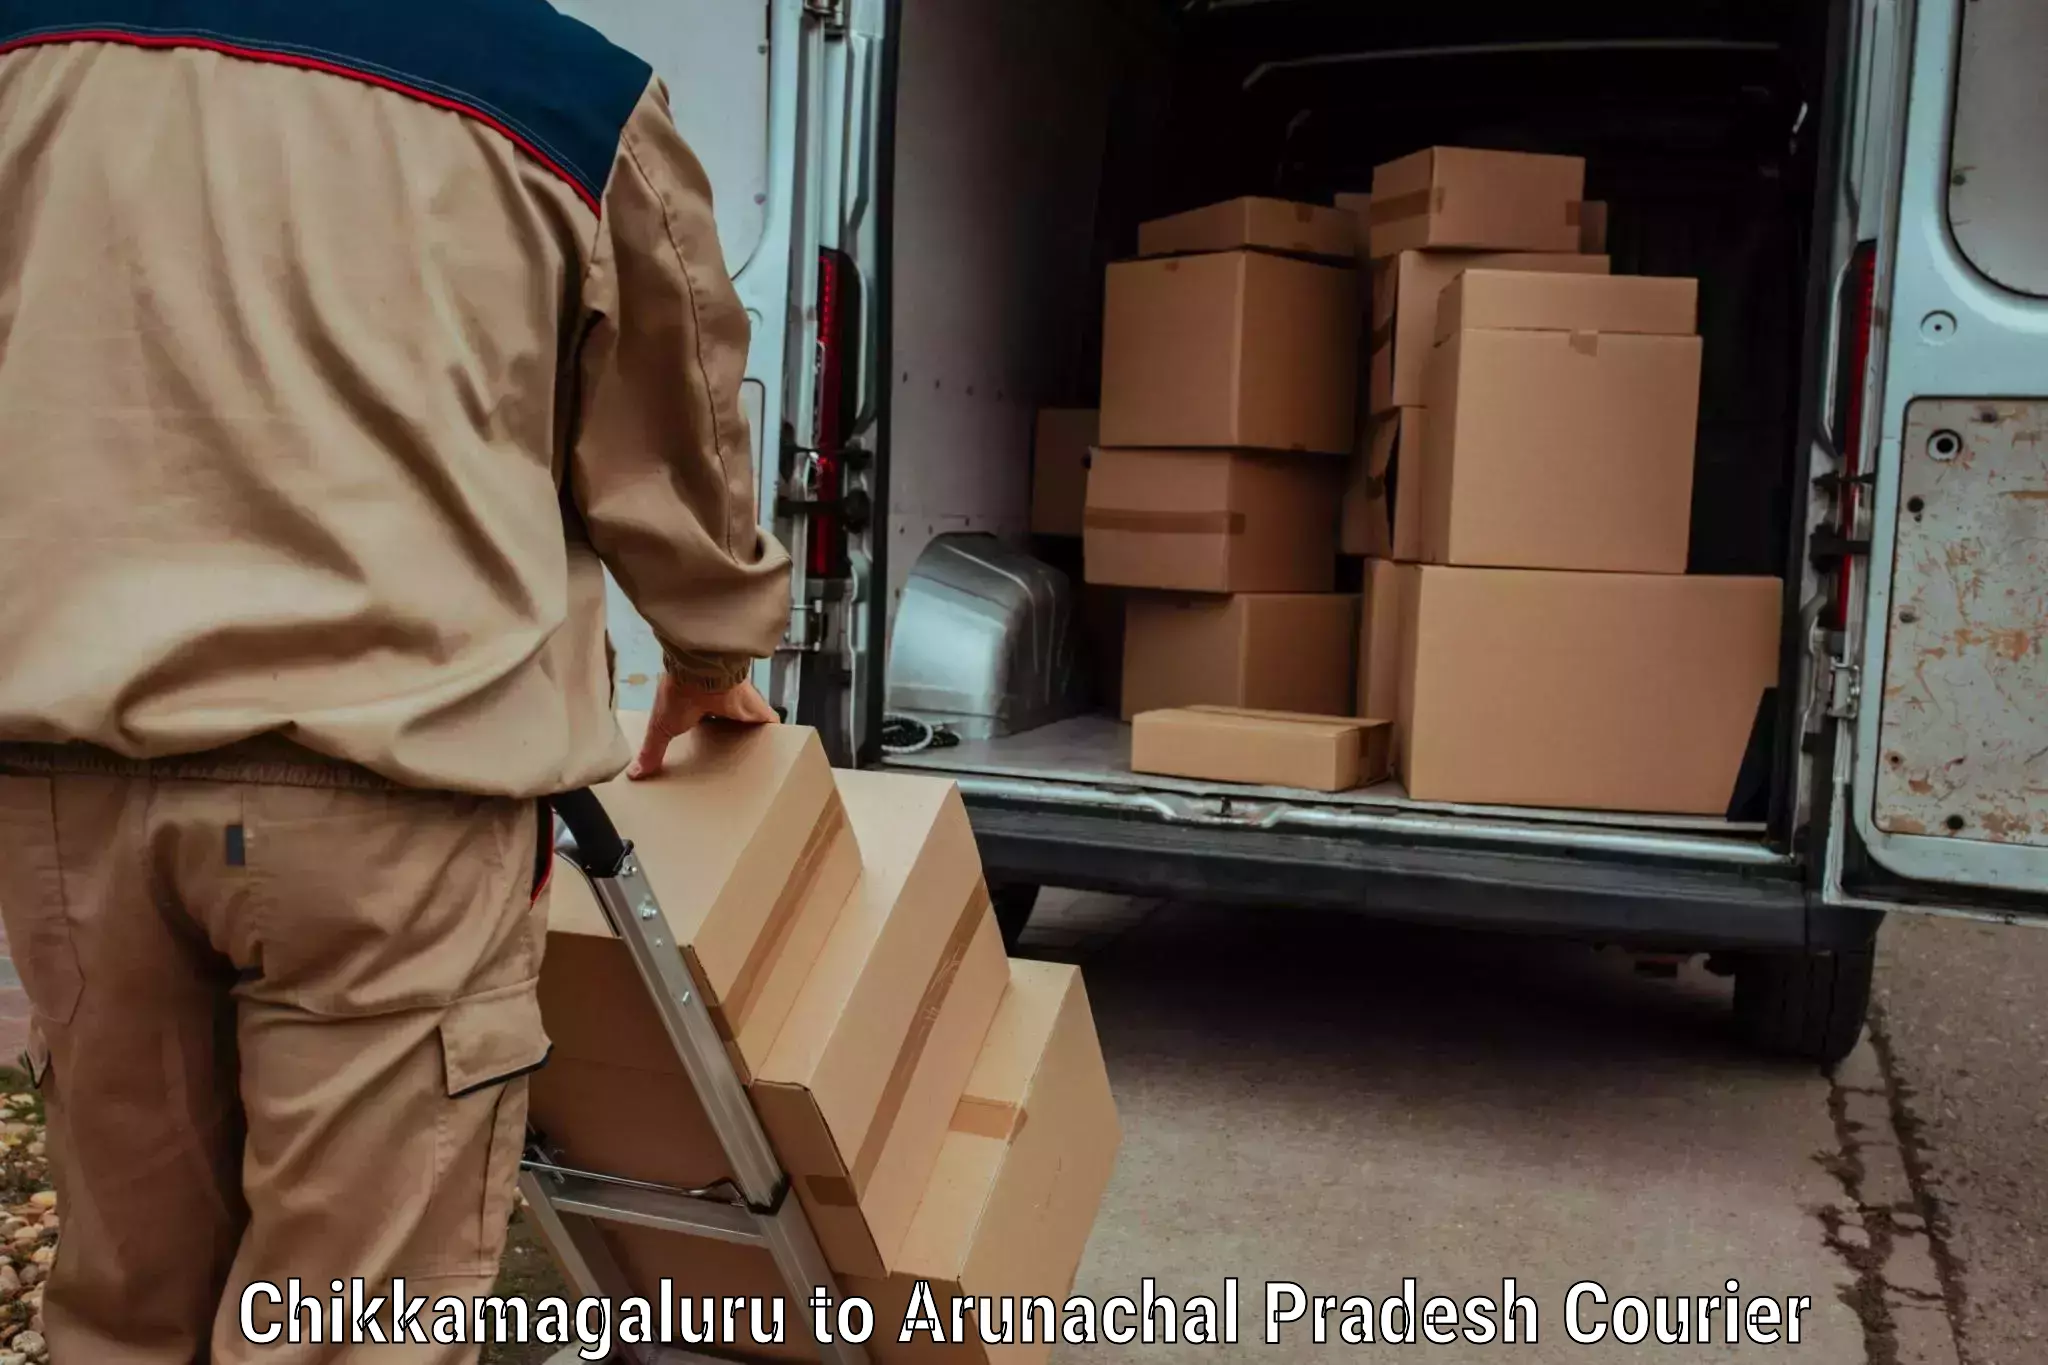 User-friendly delivery service Chikkamagaluru to Arunachal Pradesh